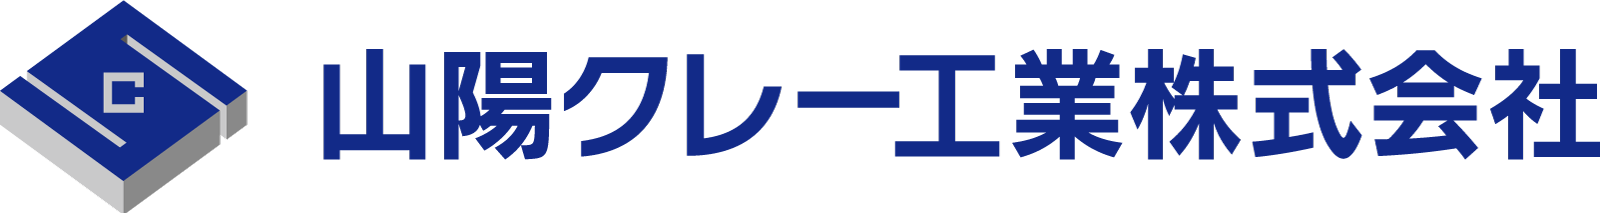 山陽クレー工業株式会社の企業のロゴ